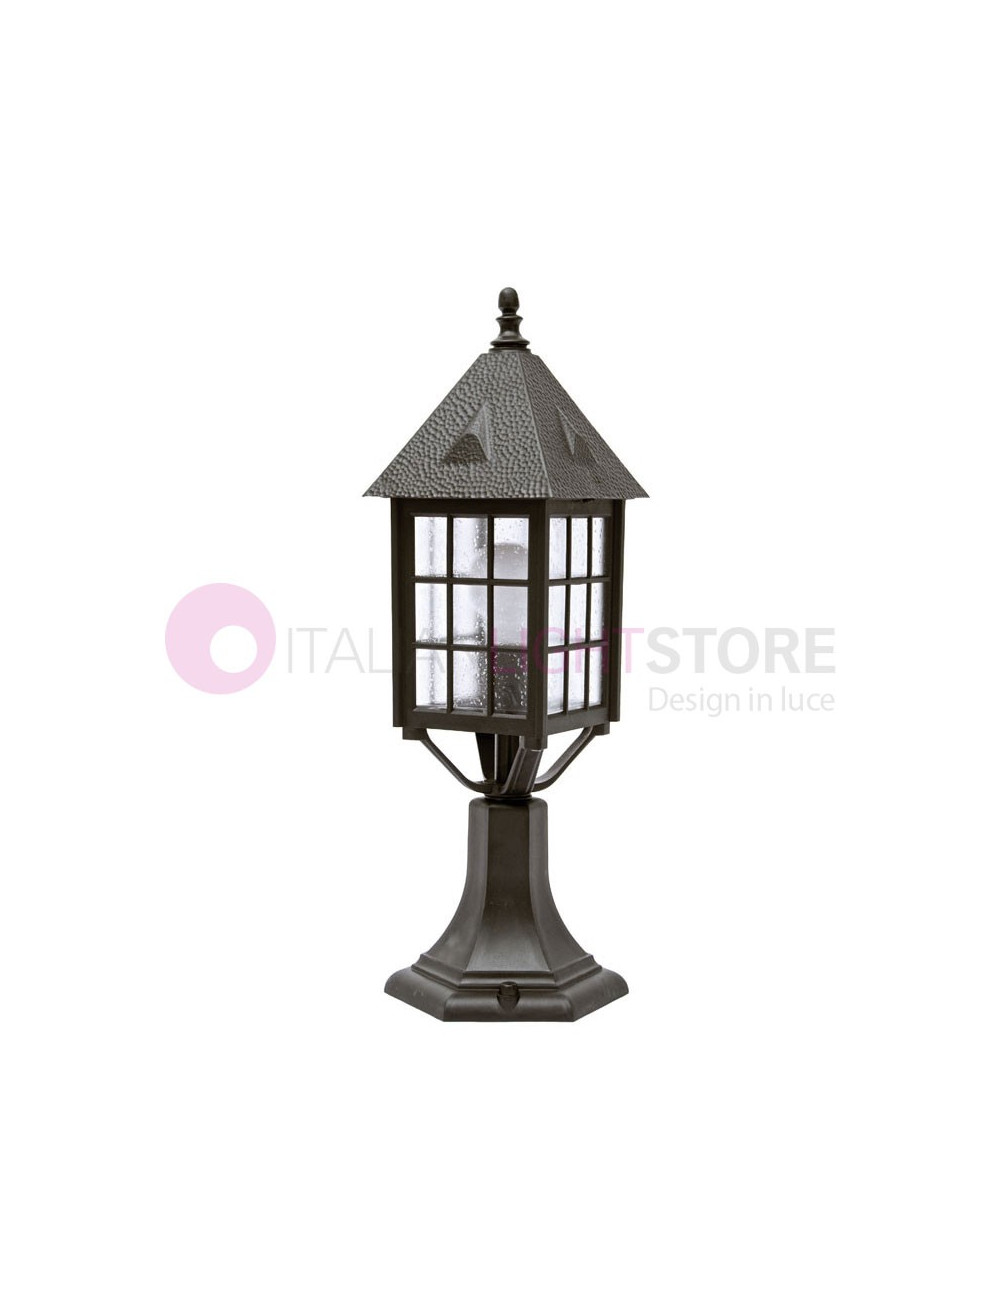 LOIRA Classic Outdoor Street Lamp Bollard Garden h.55 cm